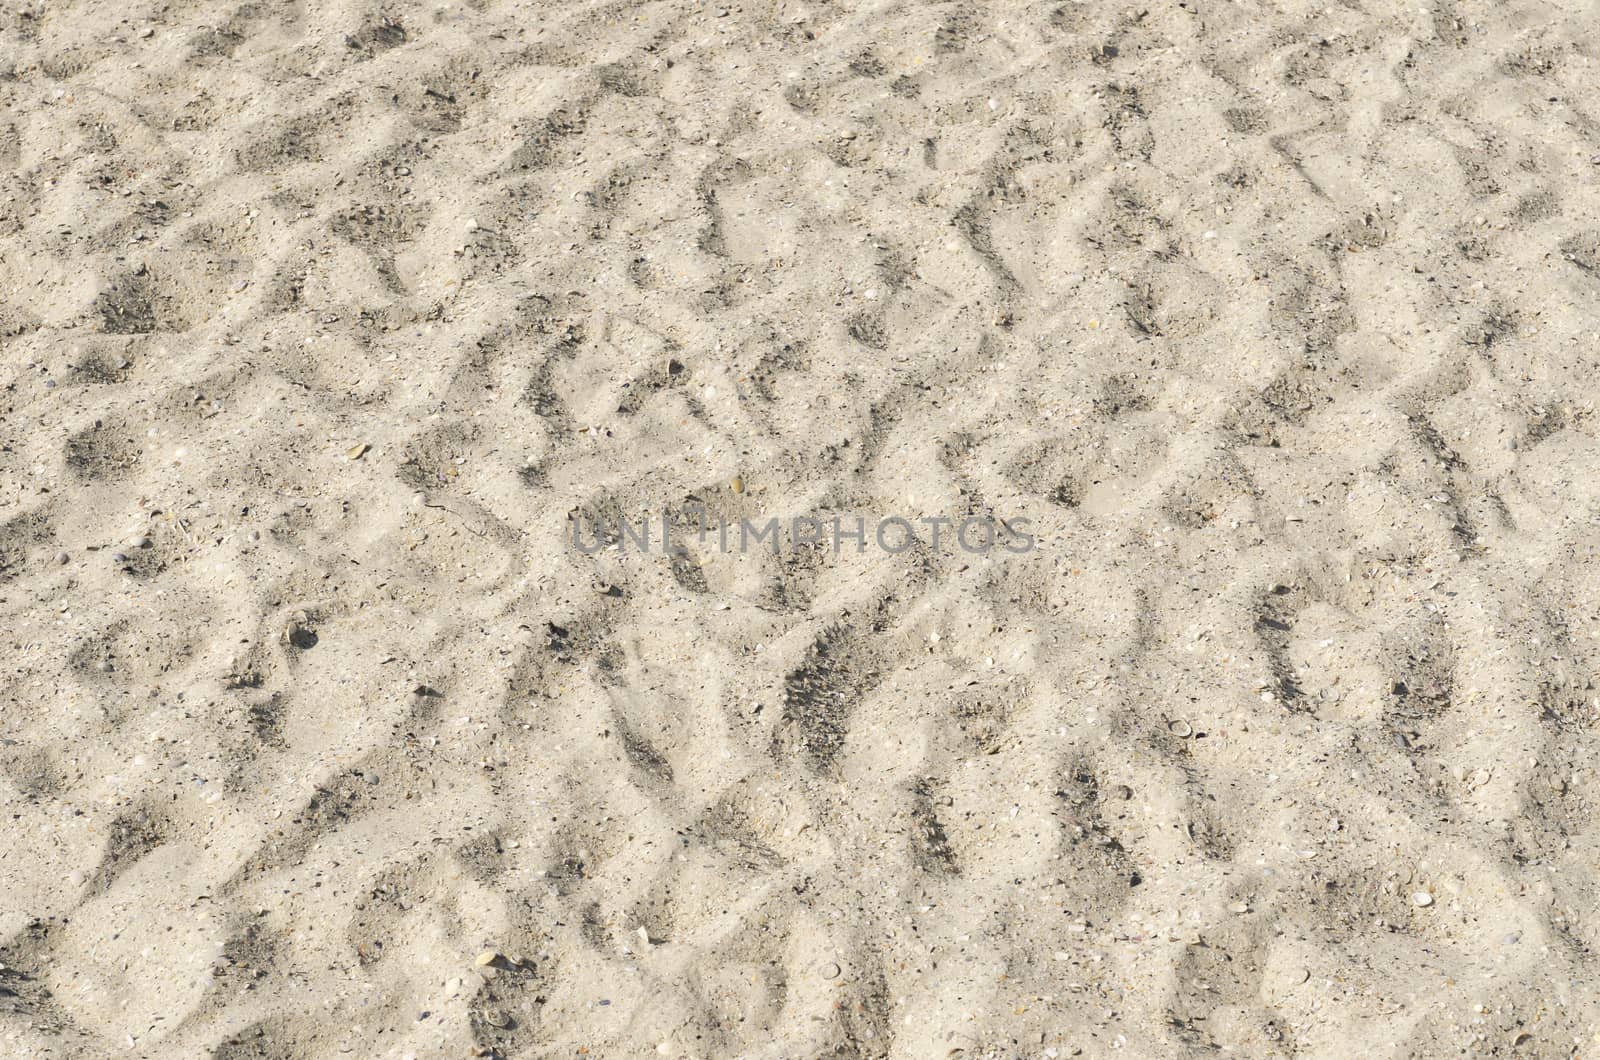 sand on beach by mycola